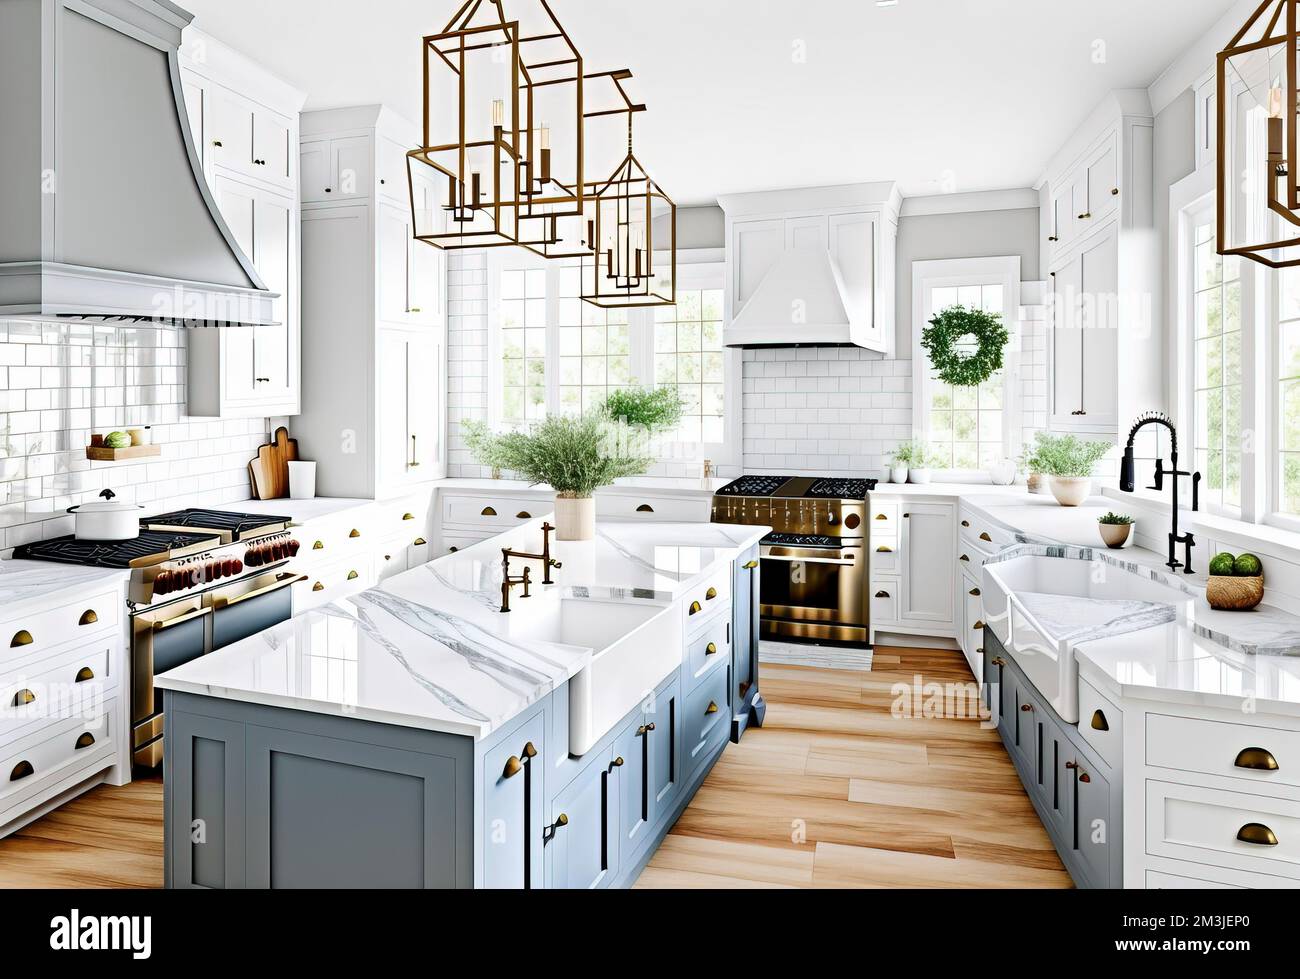 Modernes Küchendesign in einem luxuriösen Haus Stockfoto